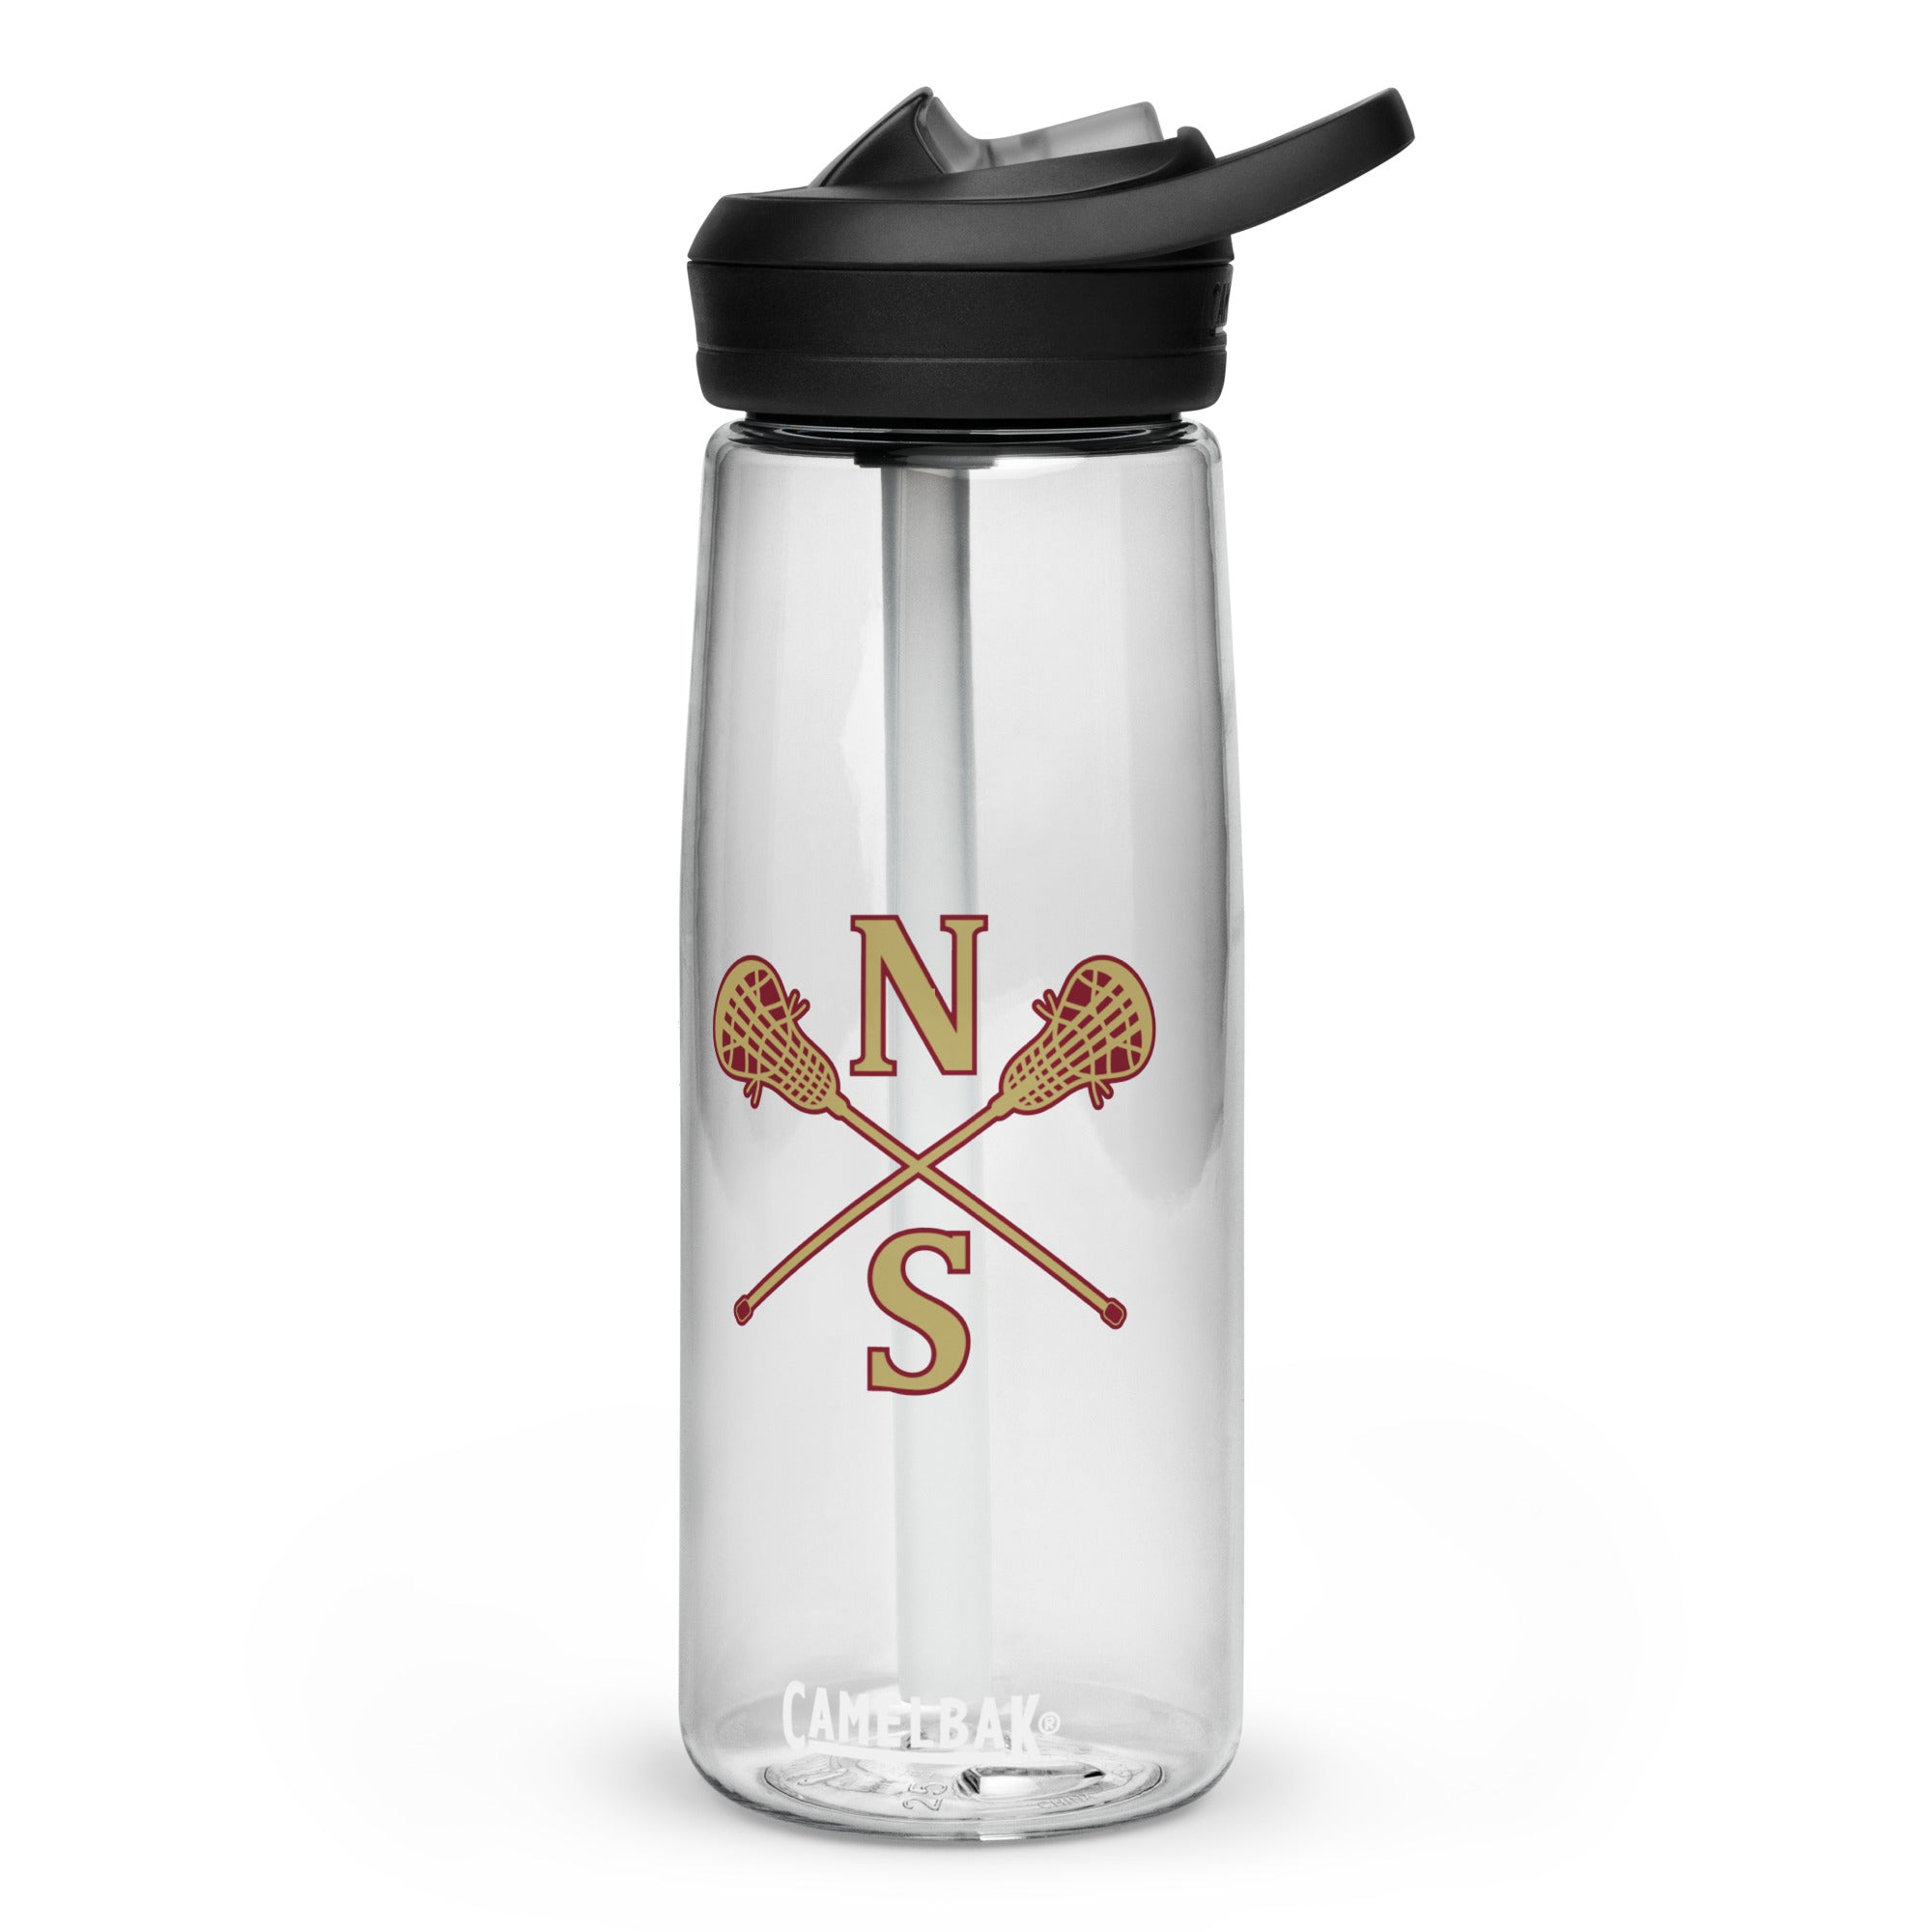 N-S Sports water bottle (Girls Logo)